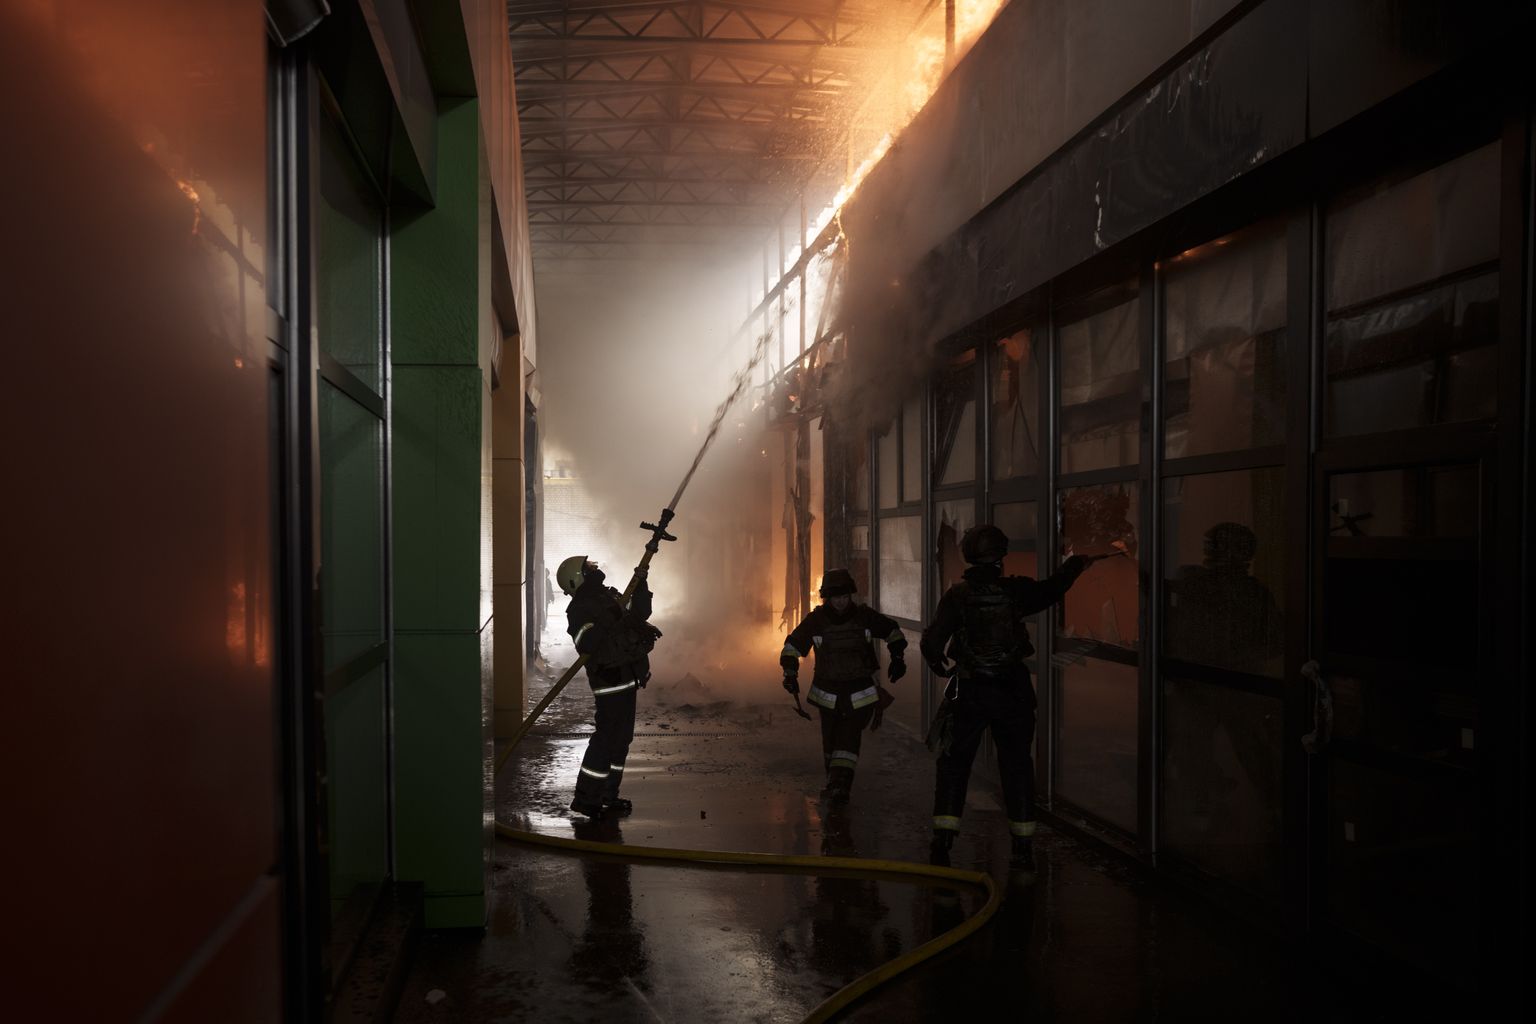 Ukraina tuletõrjujad kustutasid 22. aprillil Harkivis poekeskuses tuld. Tulekahju puhkes Venemaa pommirünnaku tõttu.